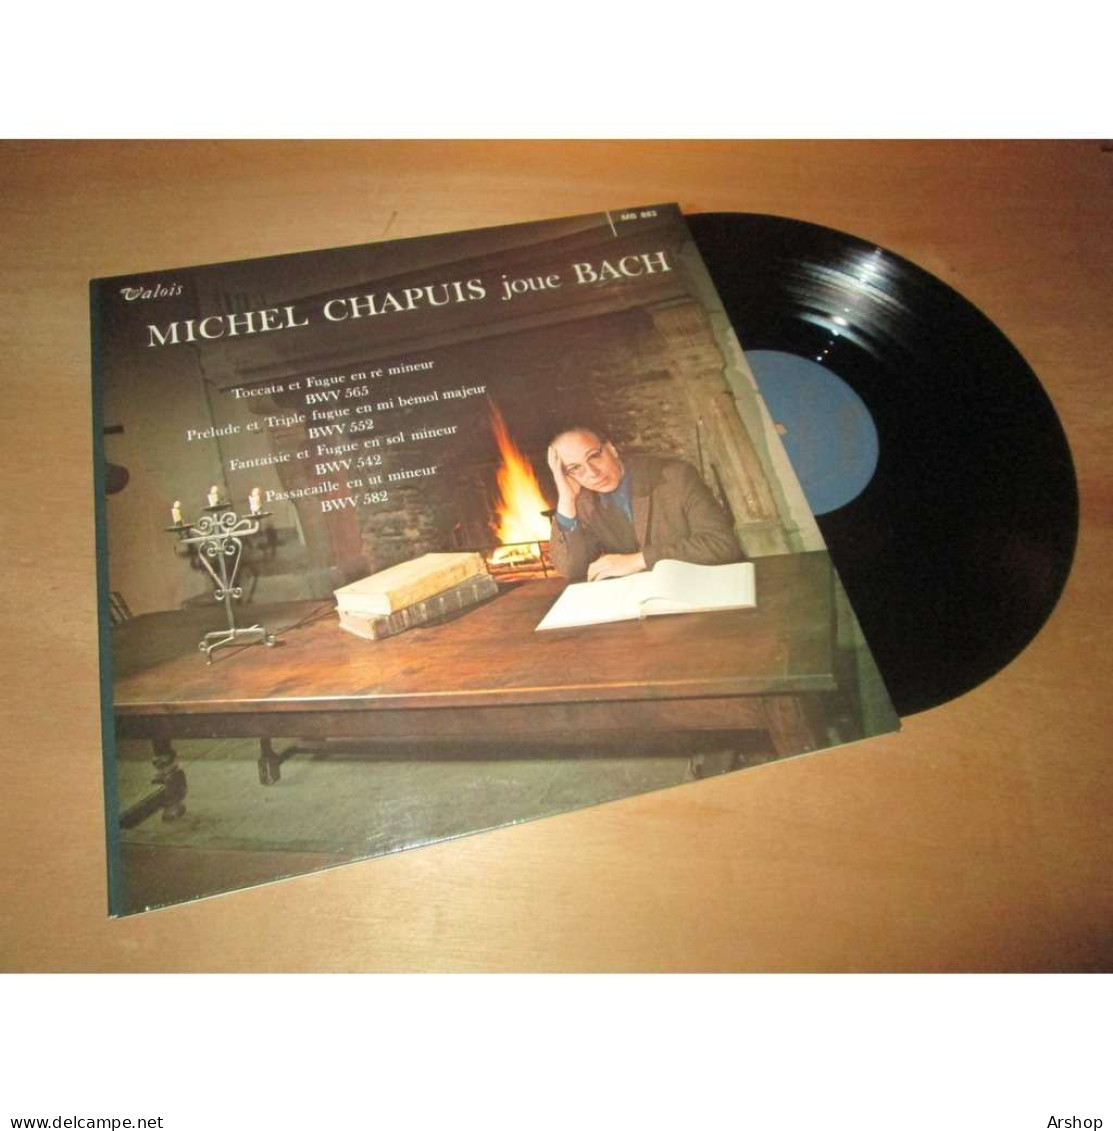 MICHEL CHAPUIS Joue BACH -  VALOIS MB 883 Lp - Clásica